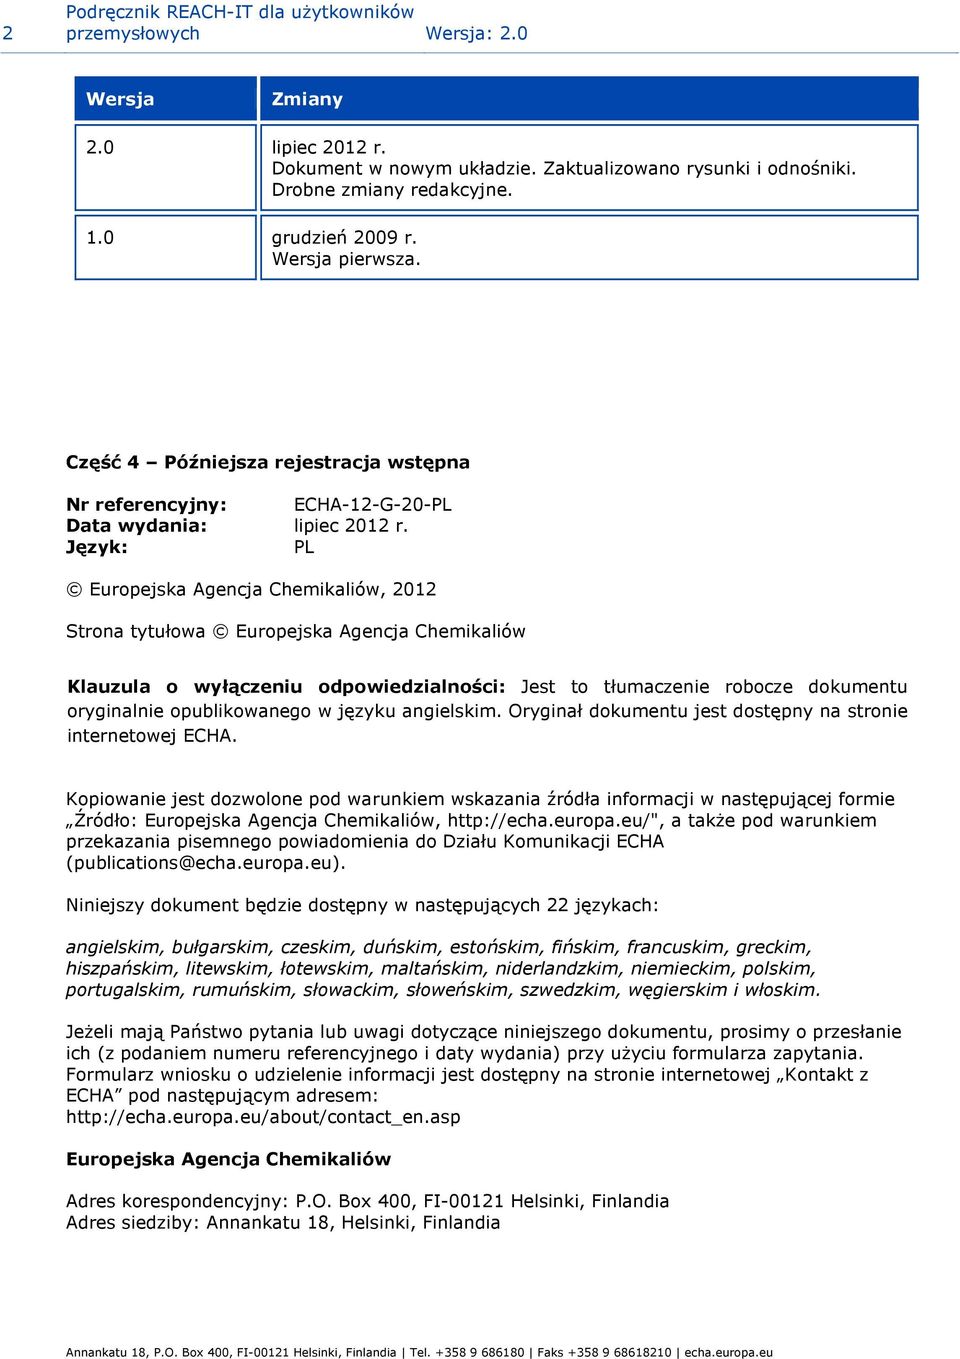 Język: PL Europejska Agencja Chemikaliów, 2012 Strona tytułowa Europejska Agencja Chemikaliów Klauzula o wyłączeniu odpowiedzialności: Jest to tłumaczenie robocze dokumentu oryginalnie opublikowanego